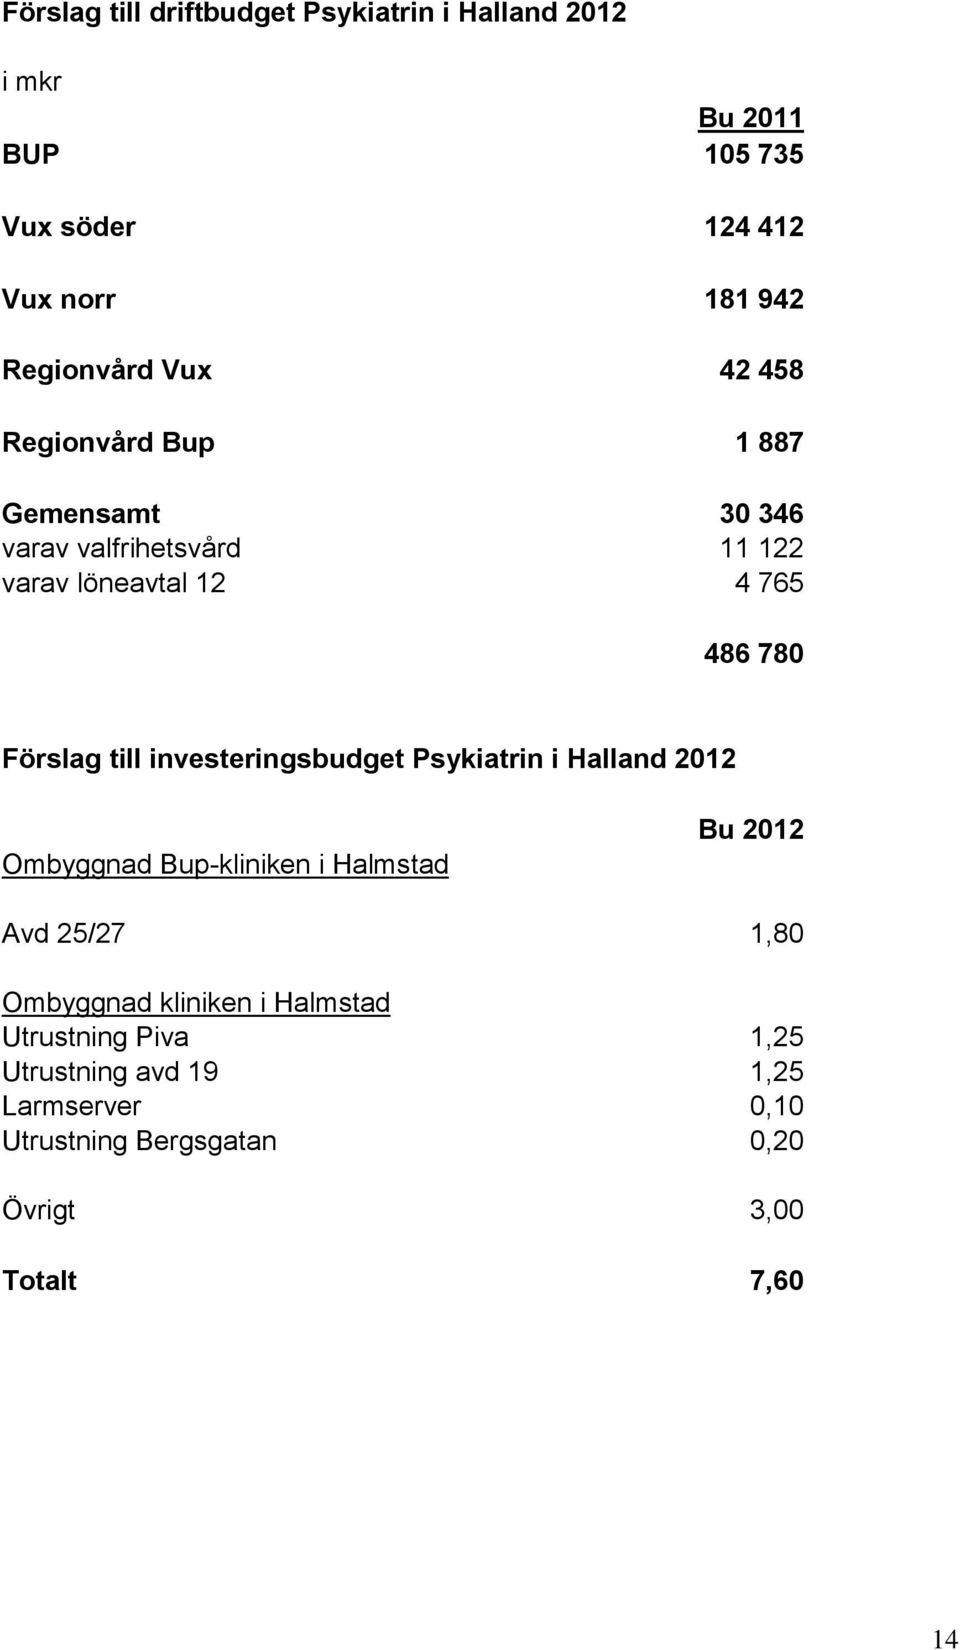 investeringsbudget Psykiatrin i Halland 2012 Ombyggnad Bup-kliniken i Halmstad Bu 2012 Avd 25/27 1,80 Ombyggnad kliniken i